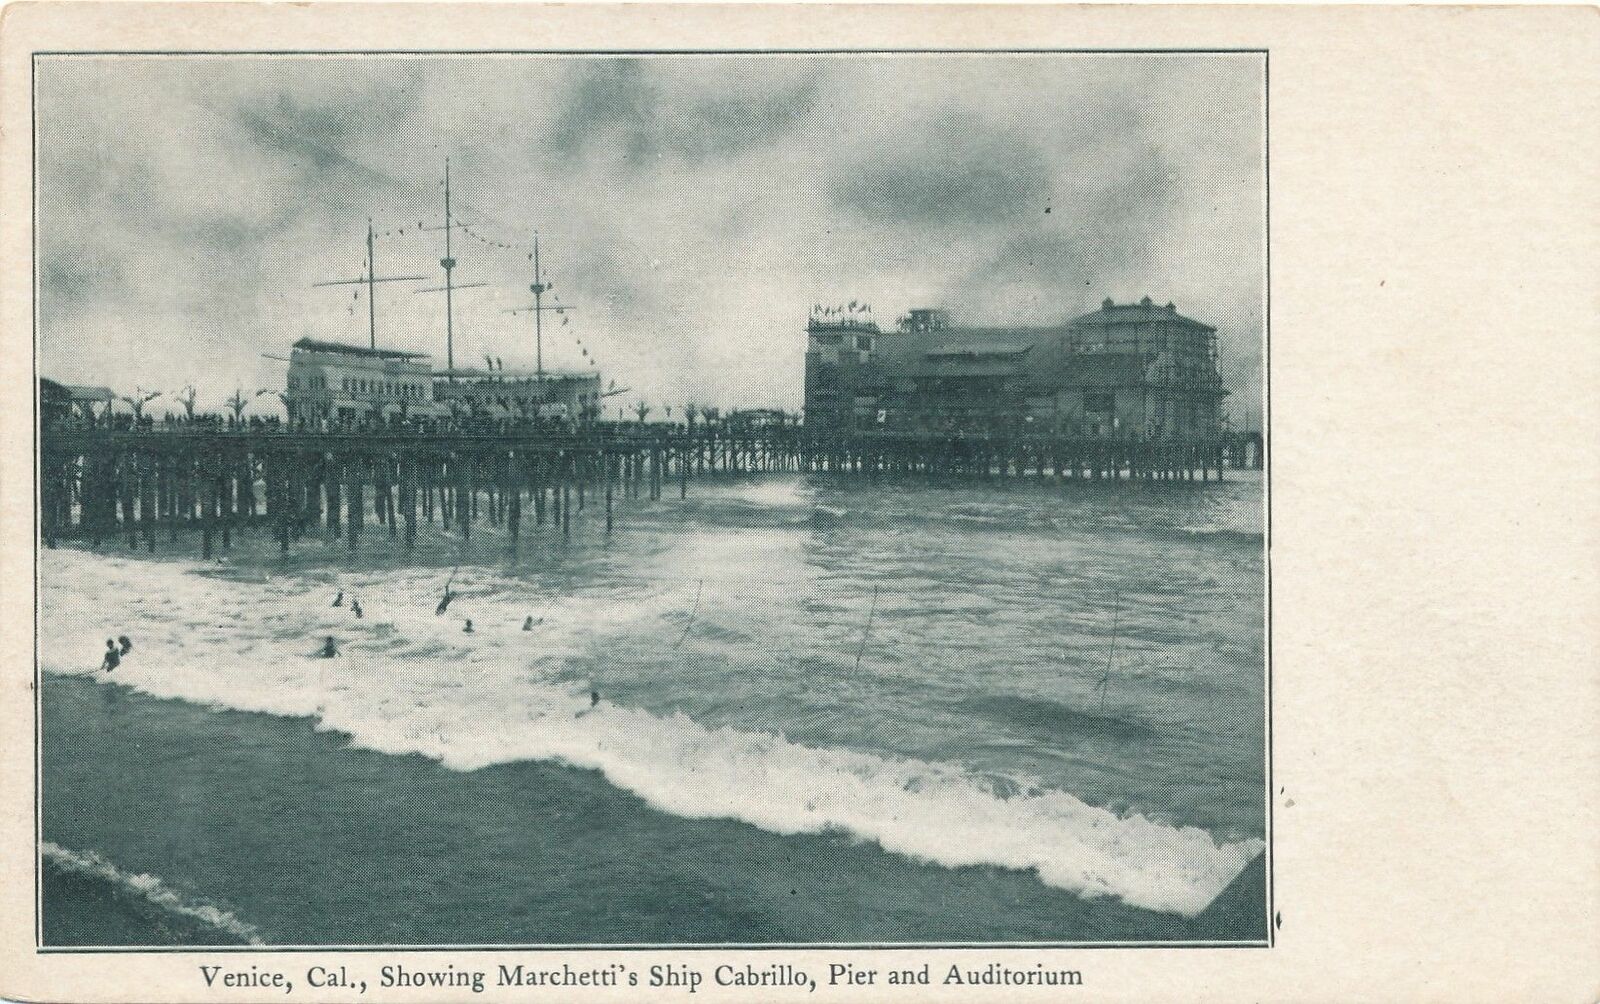 VENICE CA - Marchetti's Ship Cabrillo, Pier and Auditorium - udb (pre 1908)